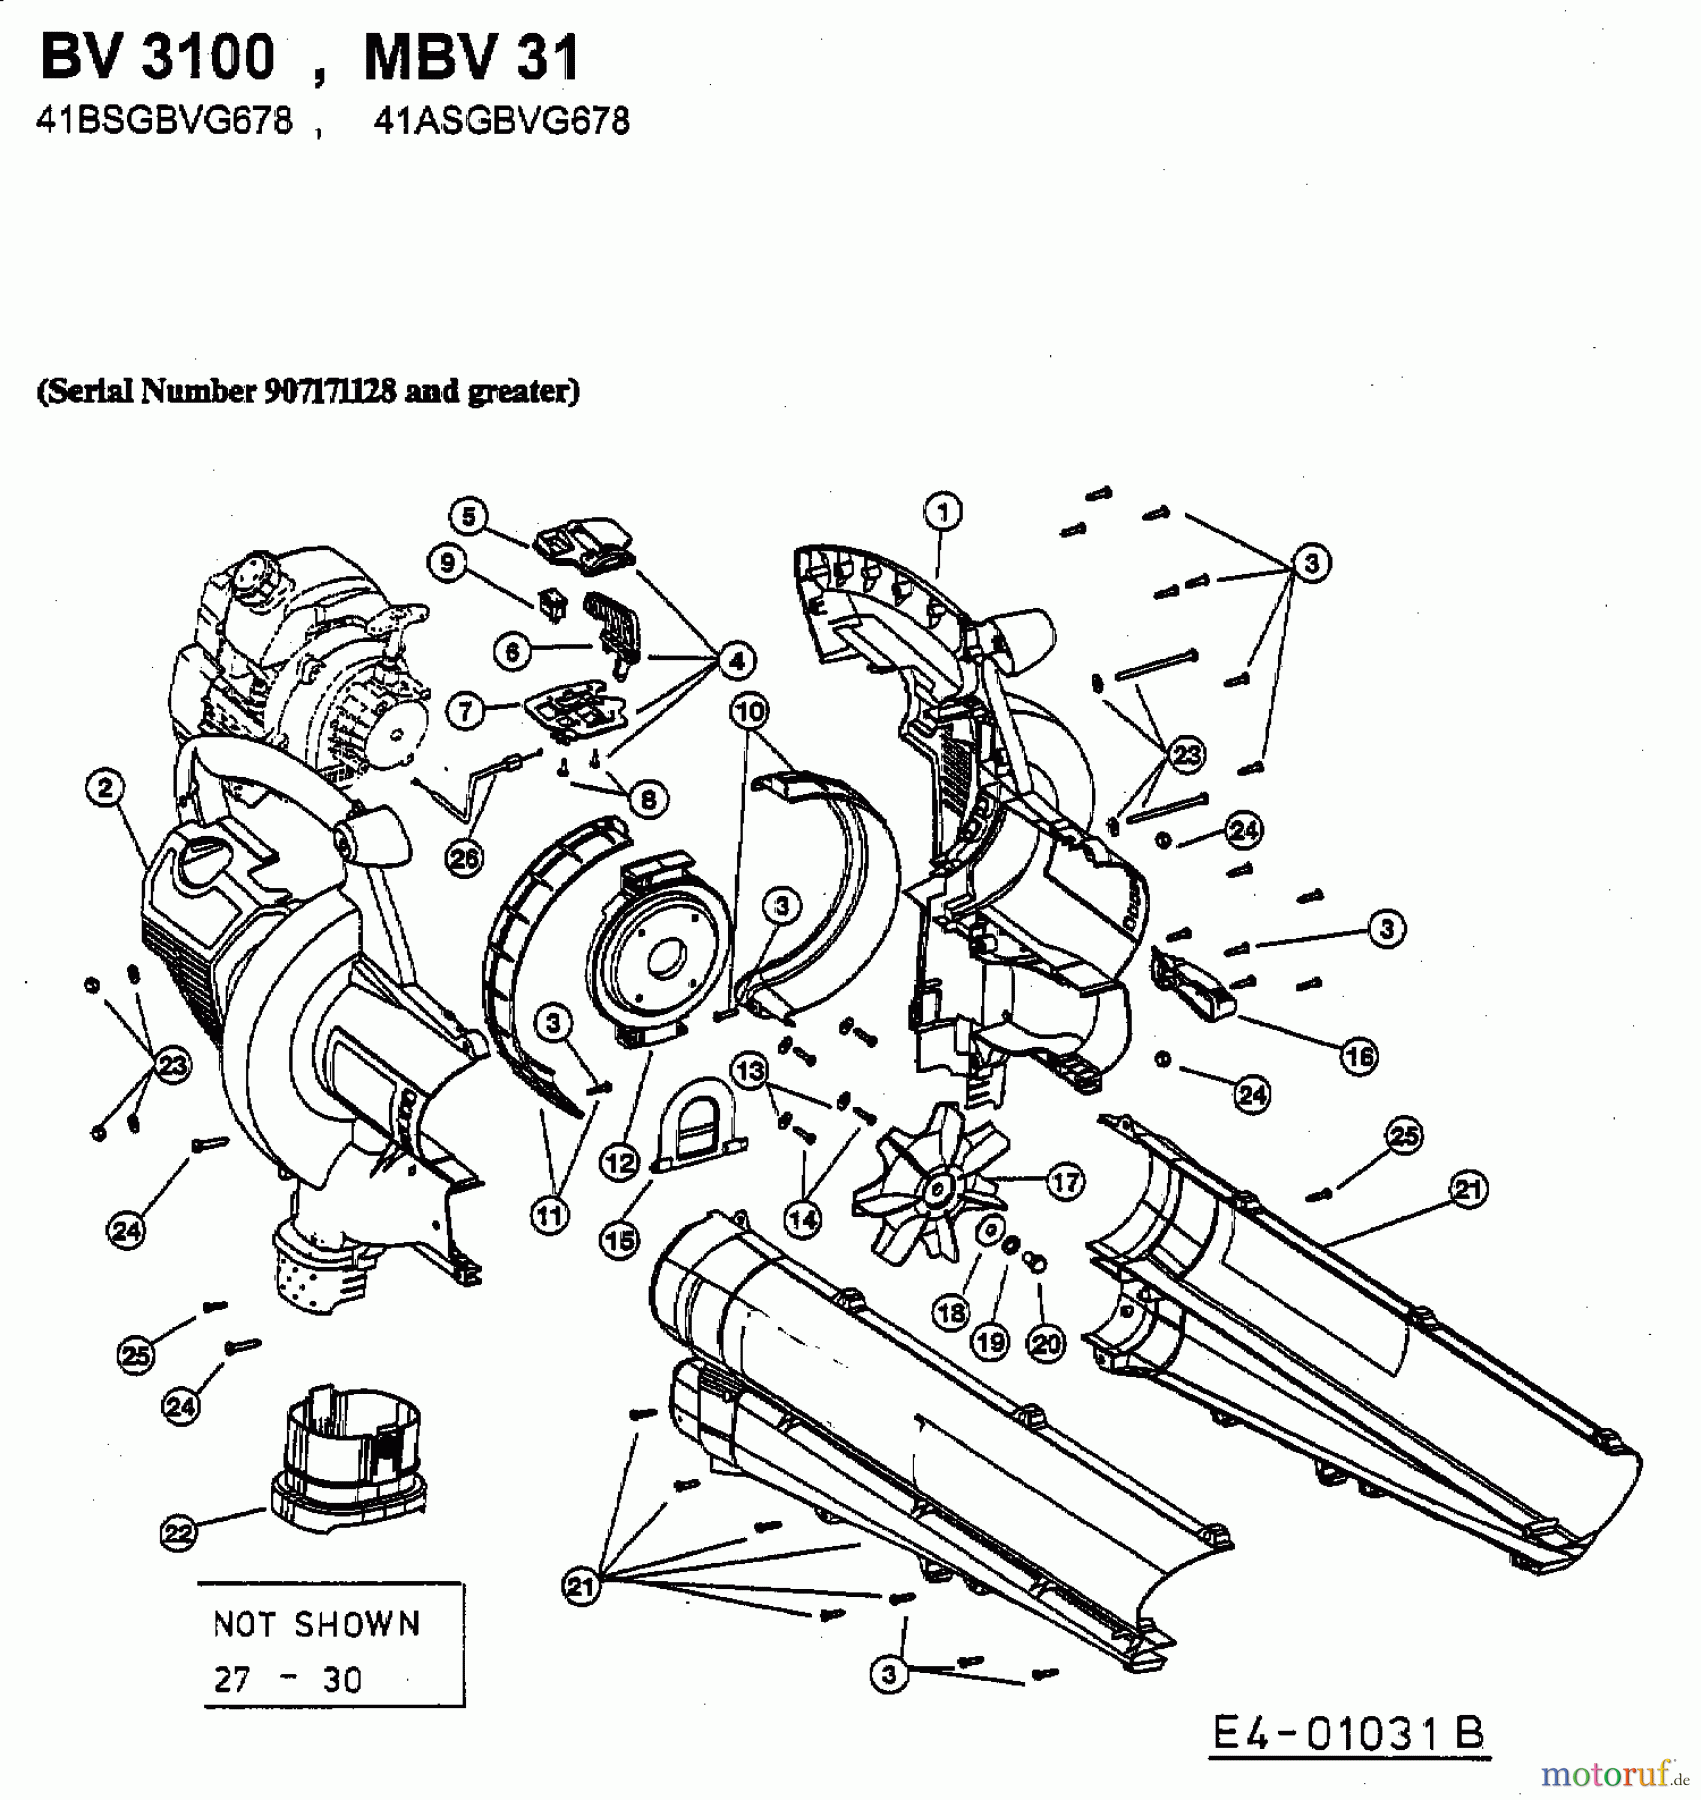  MTD Leaf blower, Blower vac BV 3100 41BSGBVG678  (2003) Basic machine